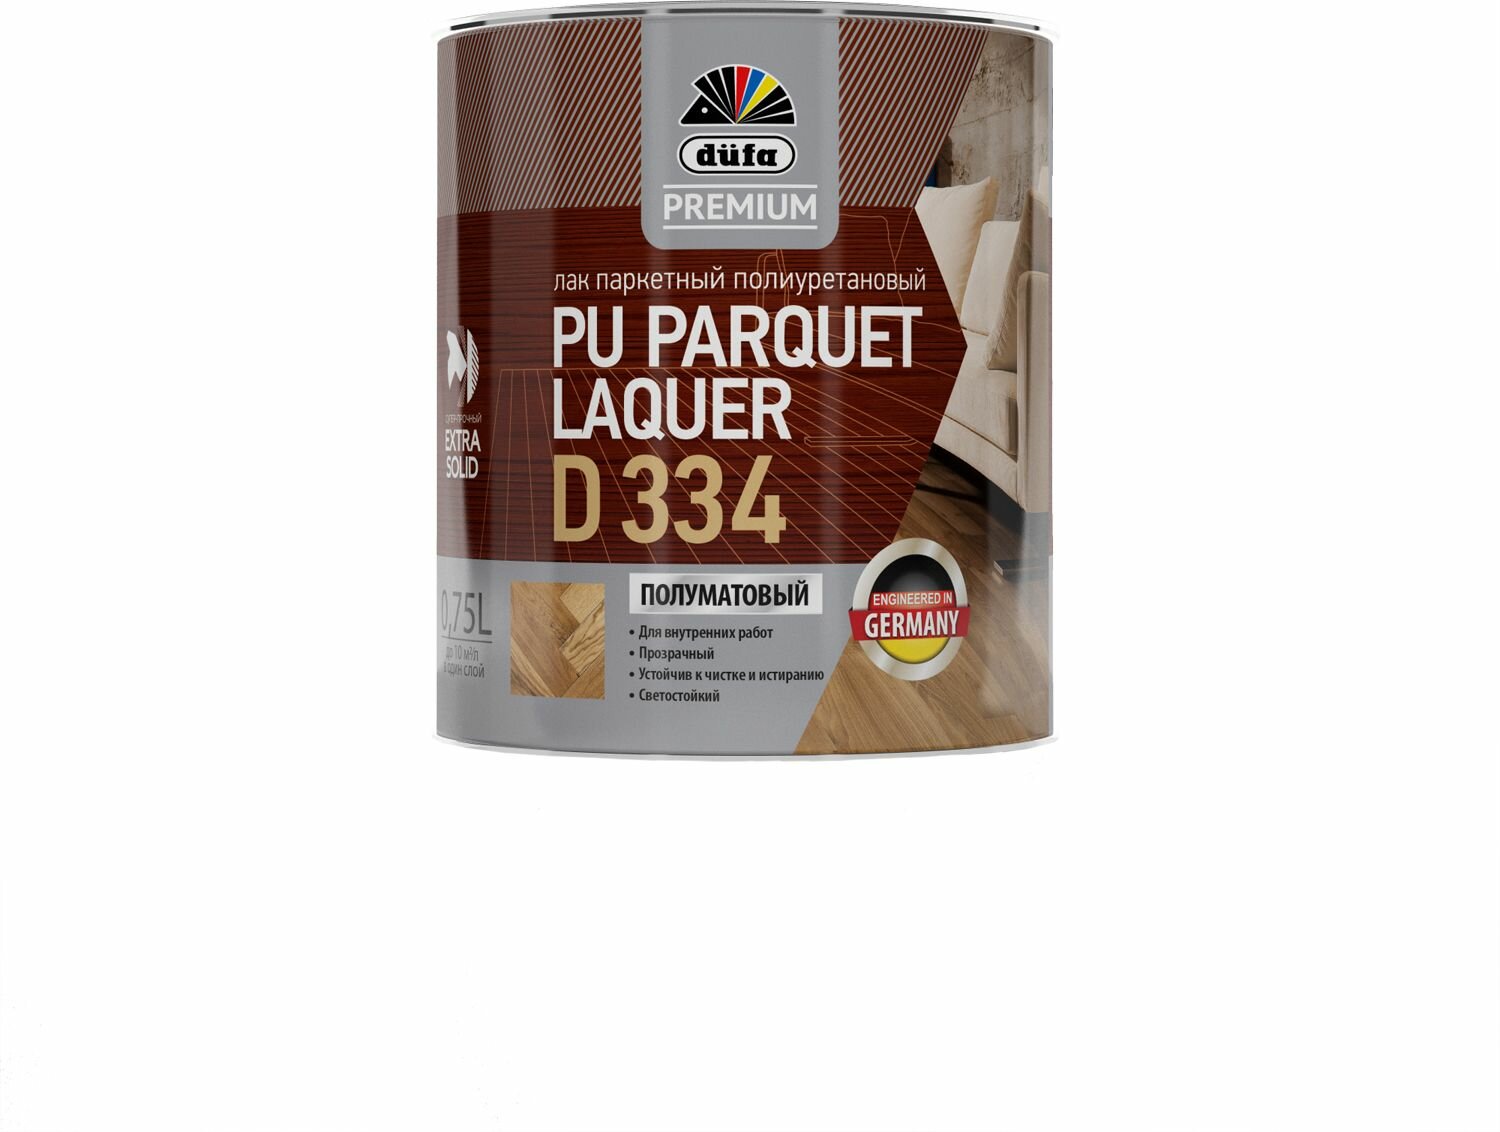 Лак паркетный полиуретановый Dufa Premium PU Parquet Laquer D334 750 мл бесцветный полуматовый